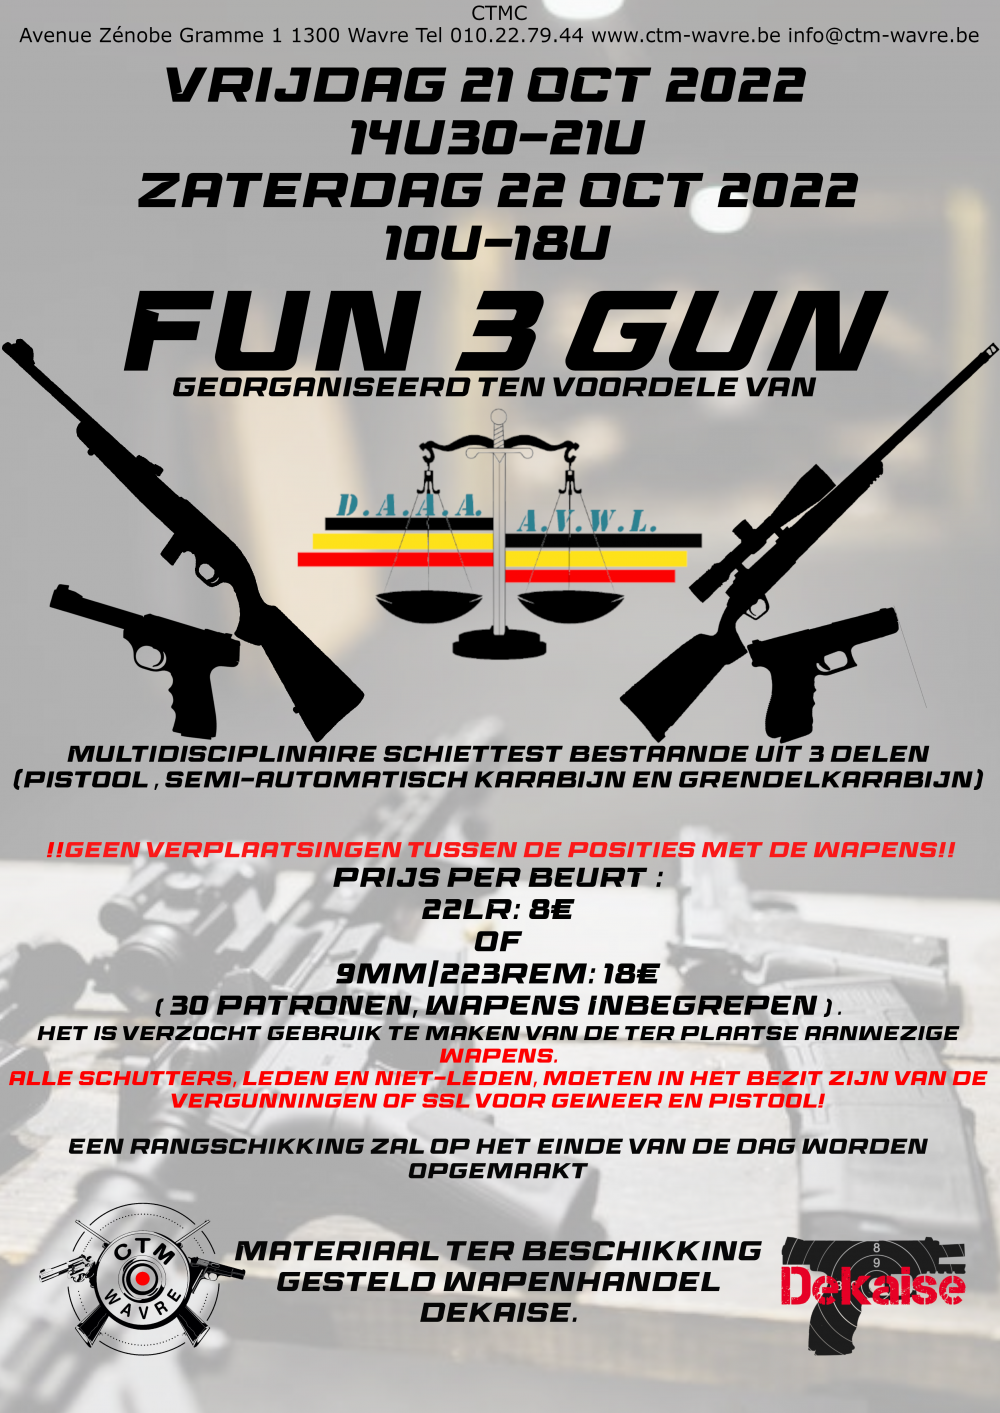 Fun 3 Gun (Georganiseerd ten voordele van AVWL)